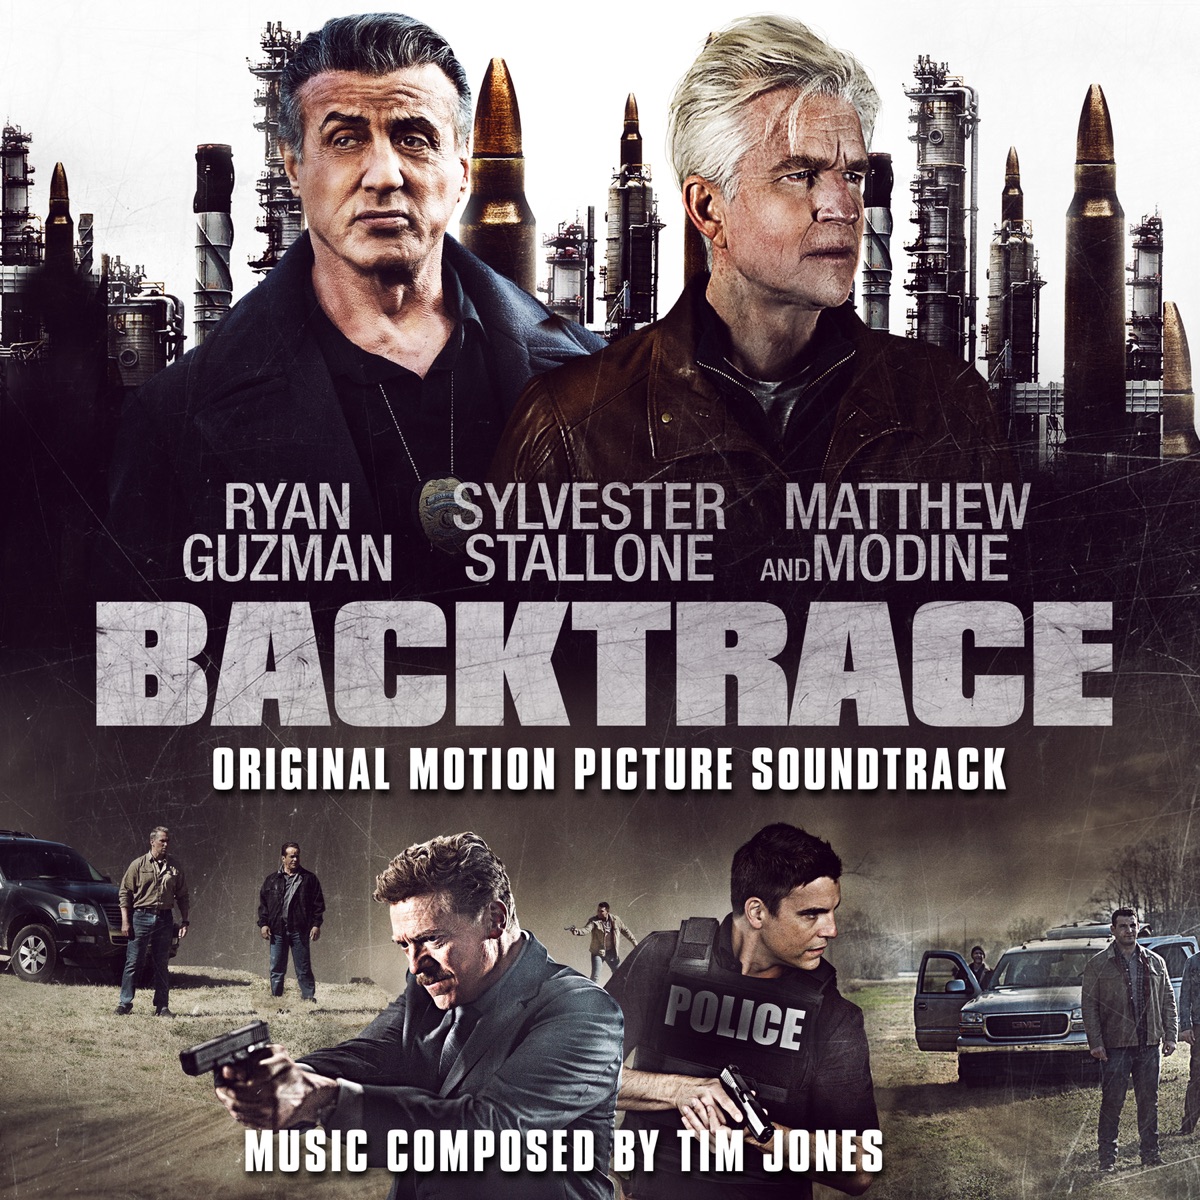 Backtrace (Original Motion Picture Soundtrack) - Album by Tim Jones - Apple  Music